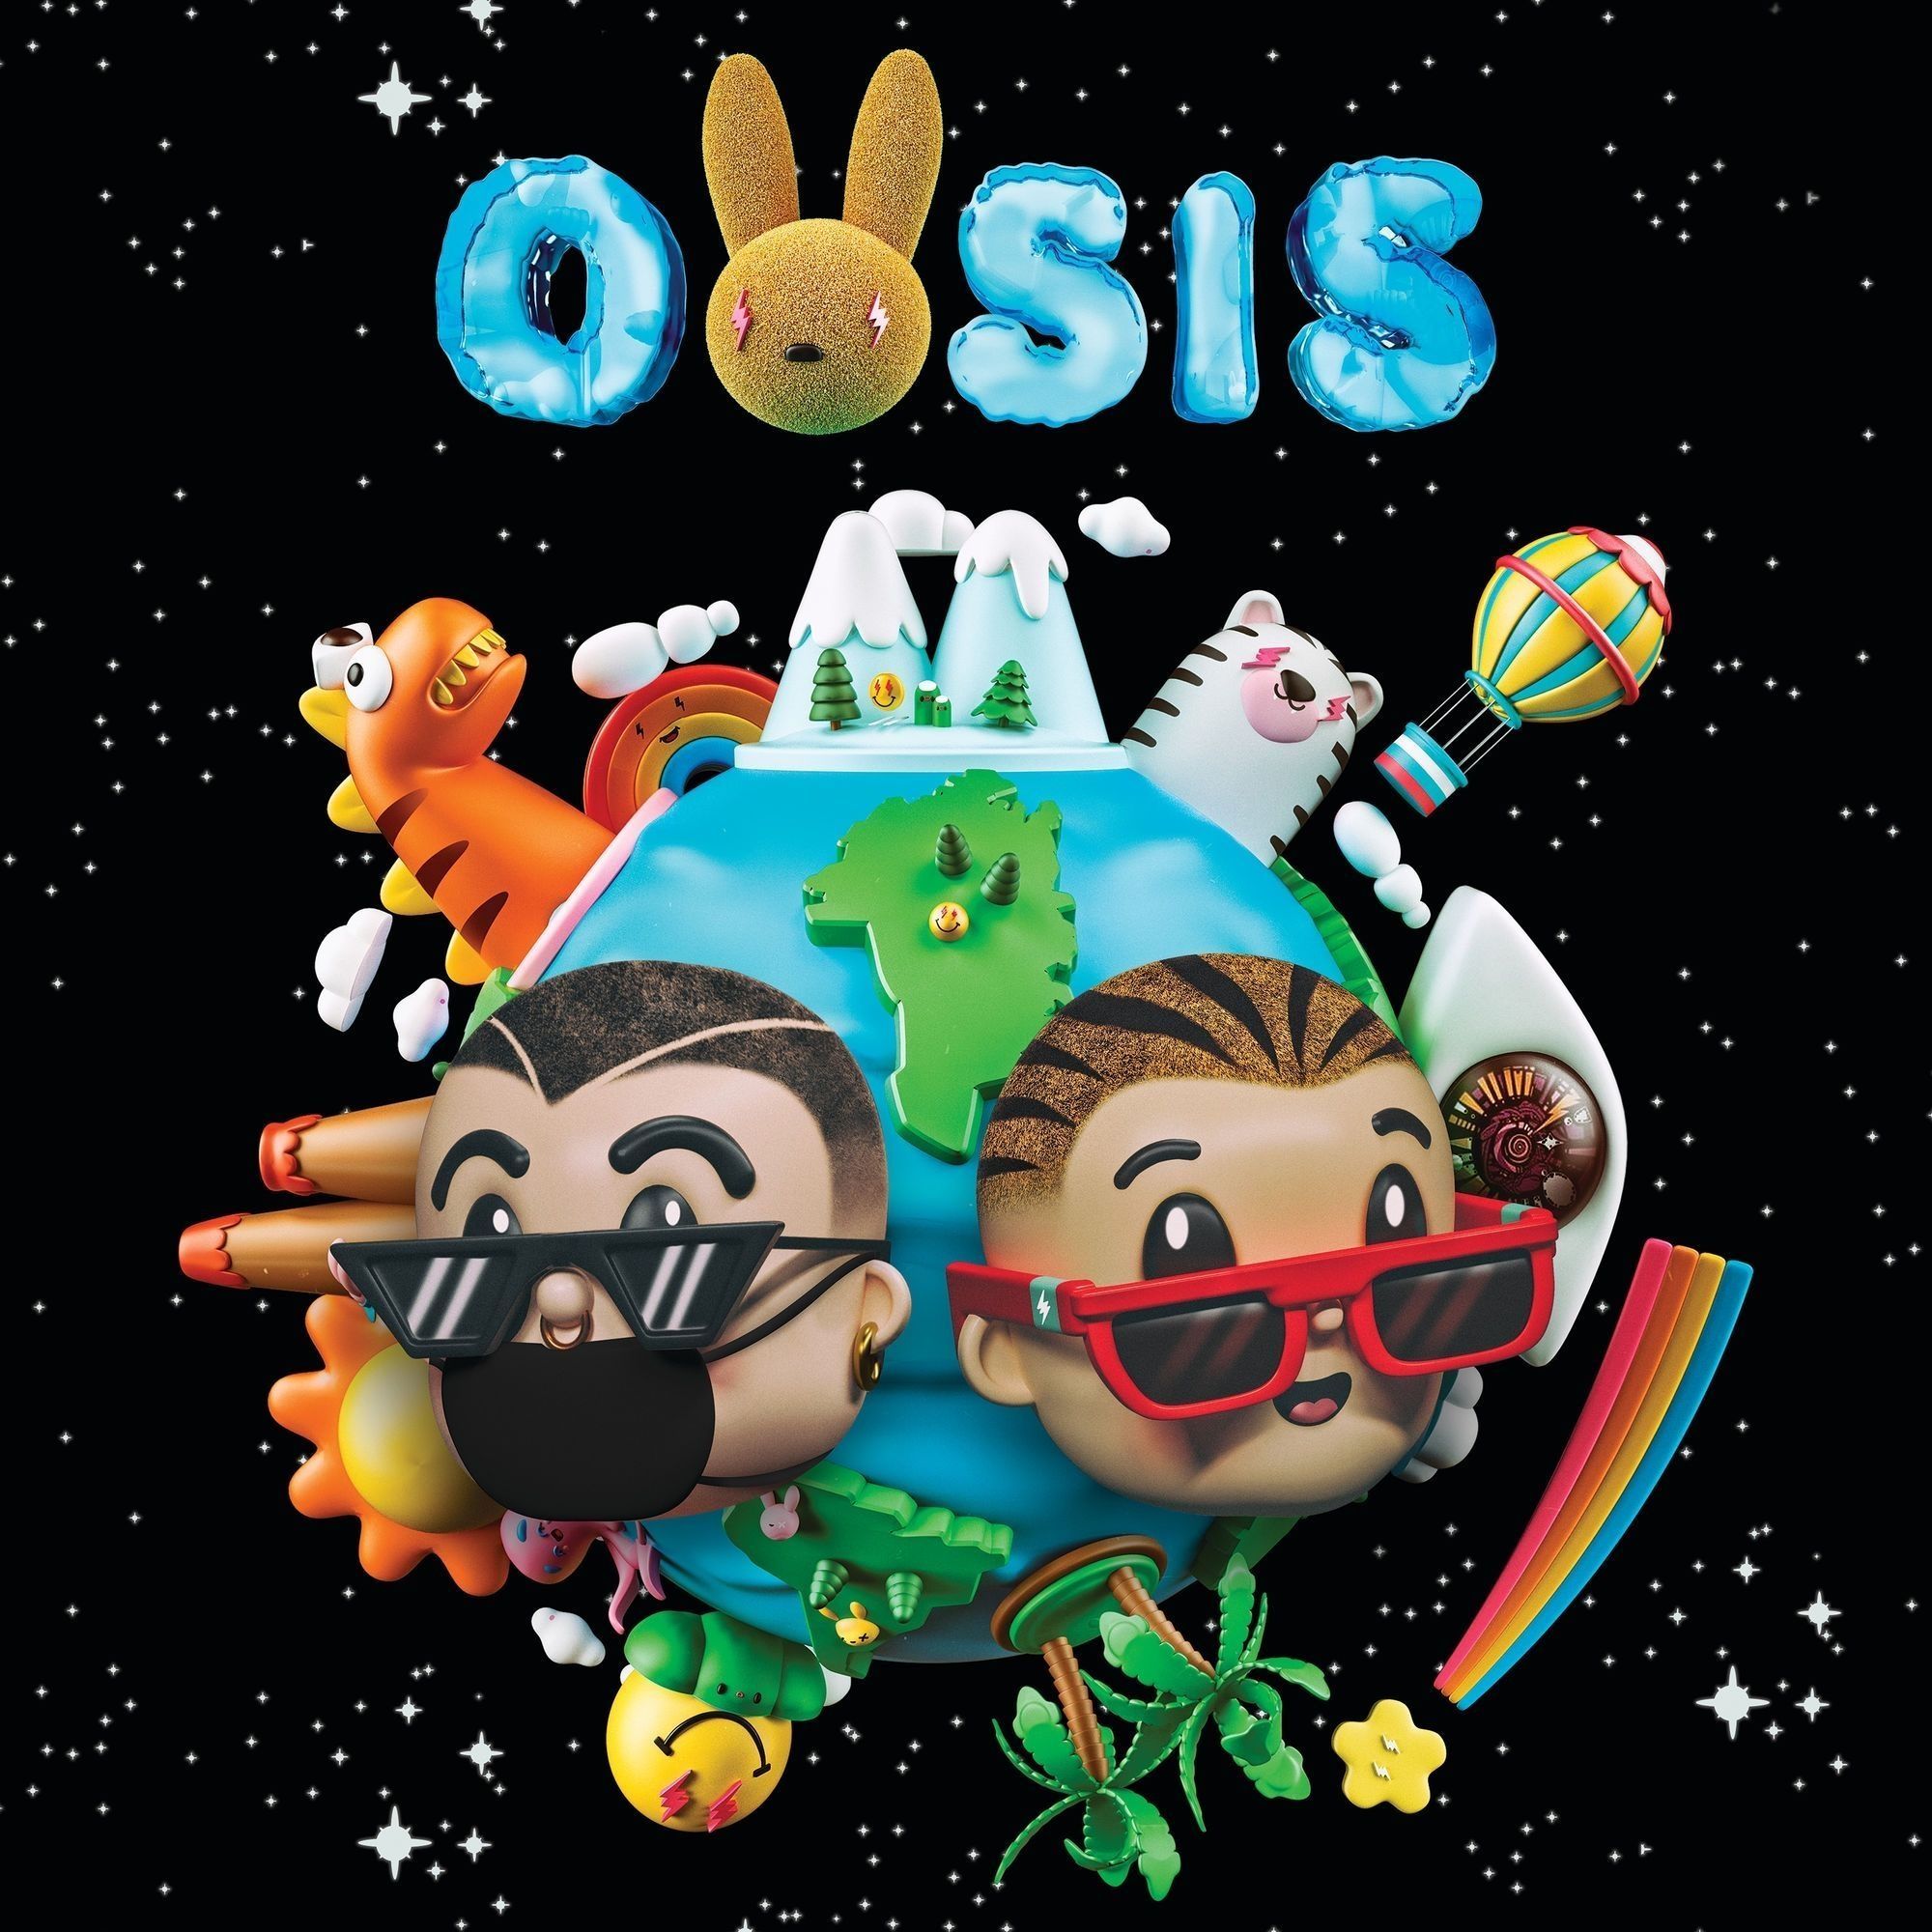 Imagem do álbum Oasis do(a) artista Bad Bunny